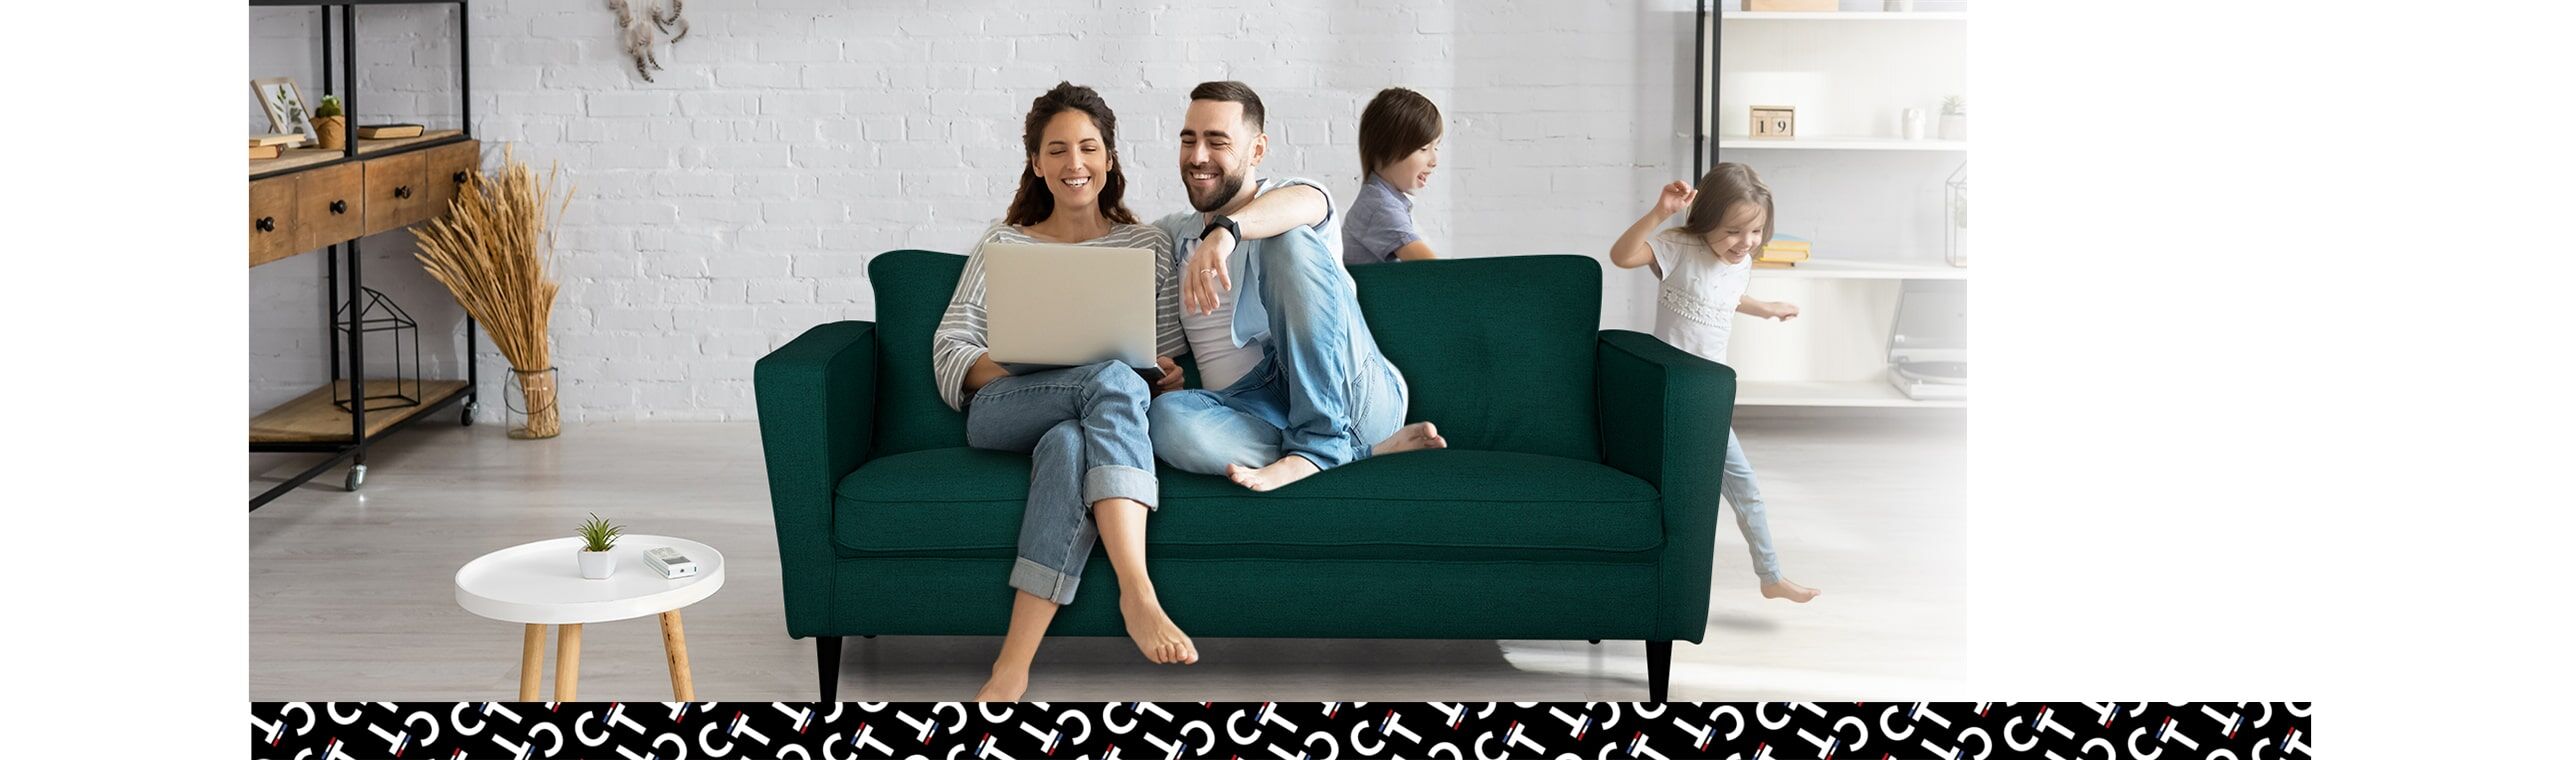 famille assise sur un canapé en tissu avec un ordinateur